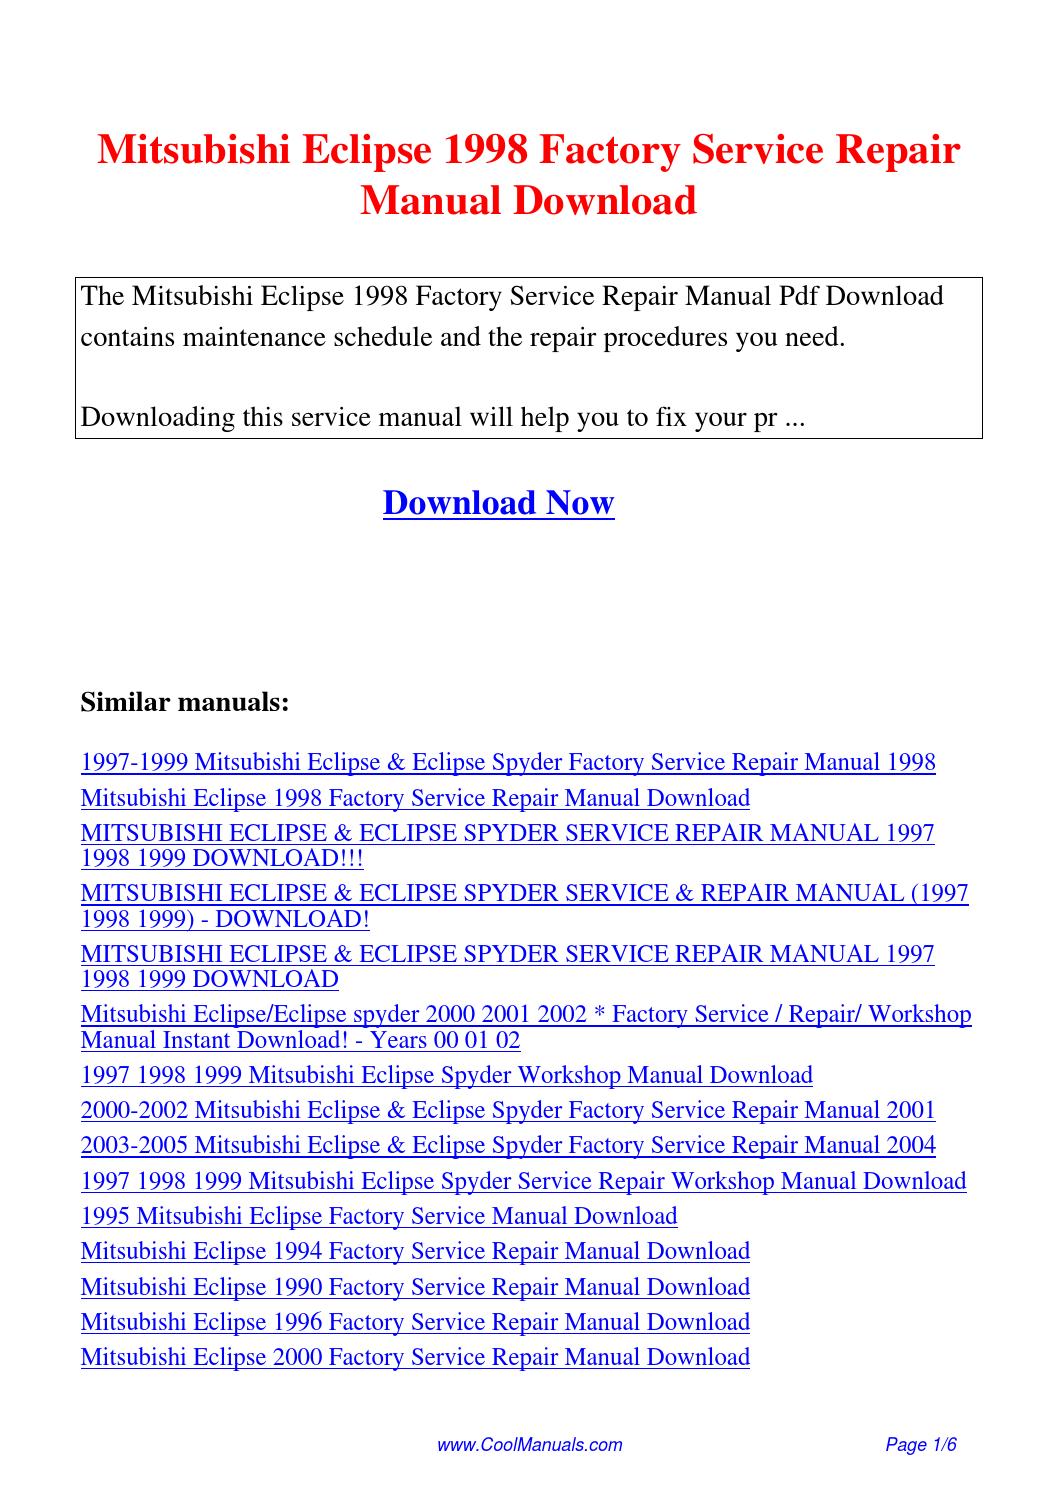 Mitsubishi Eclipse Repair Manual Download